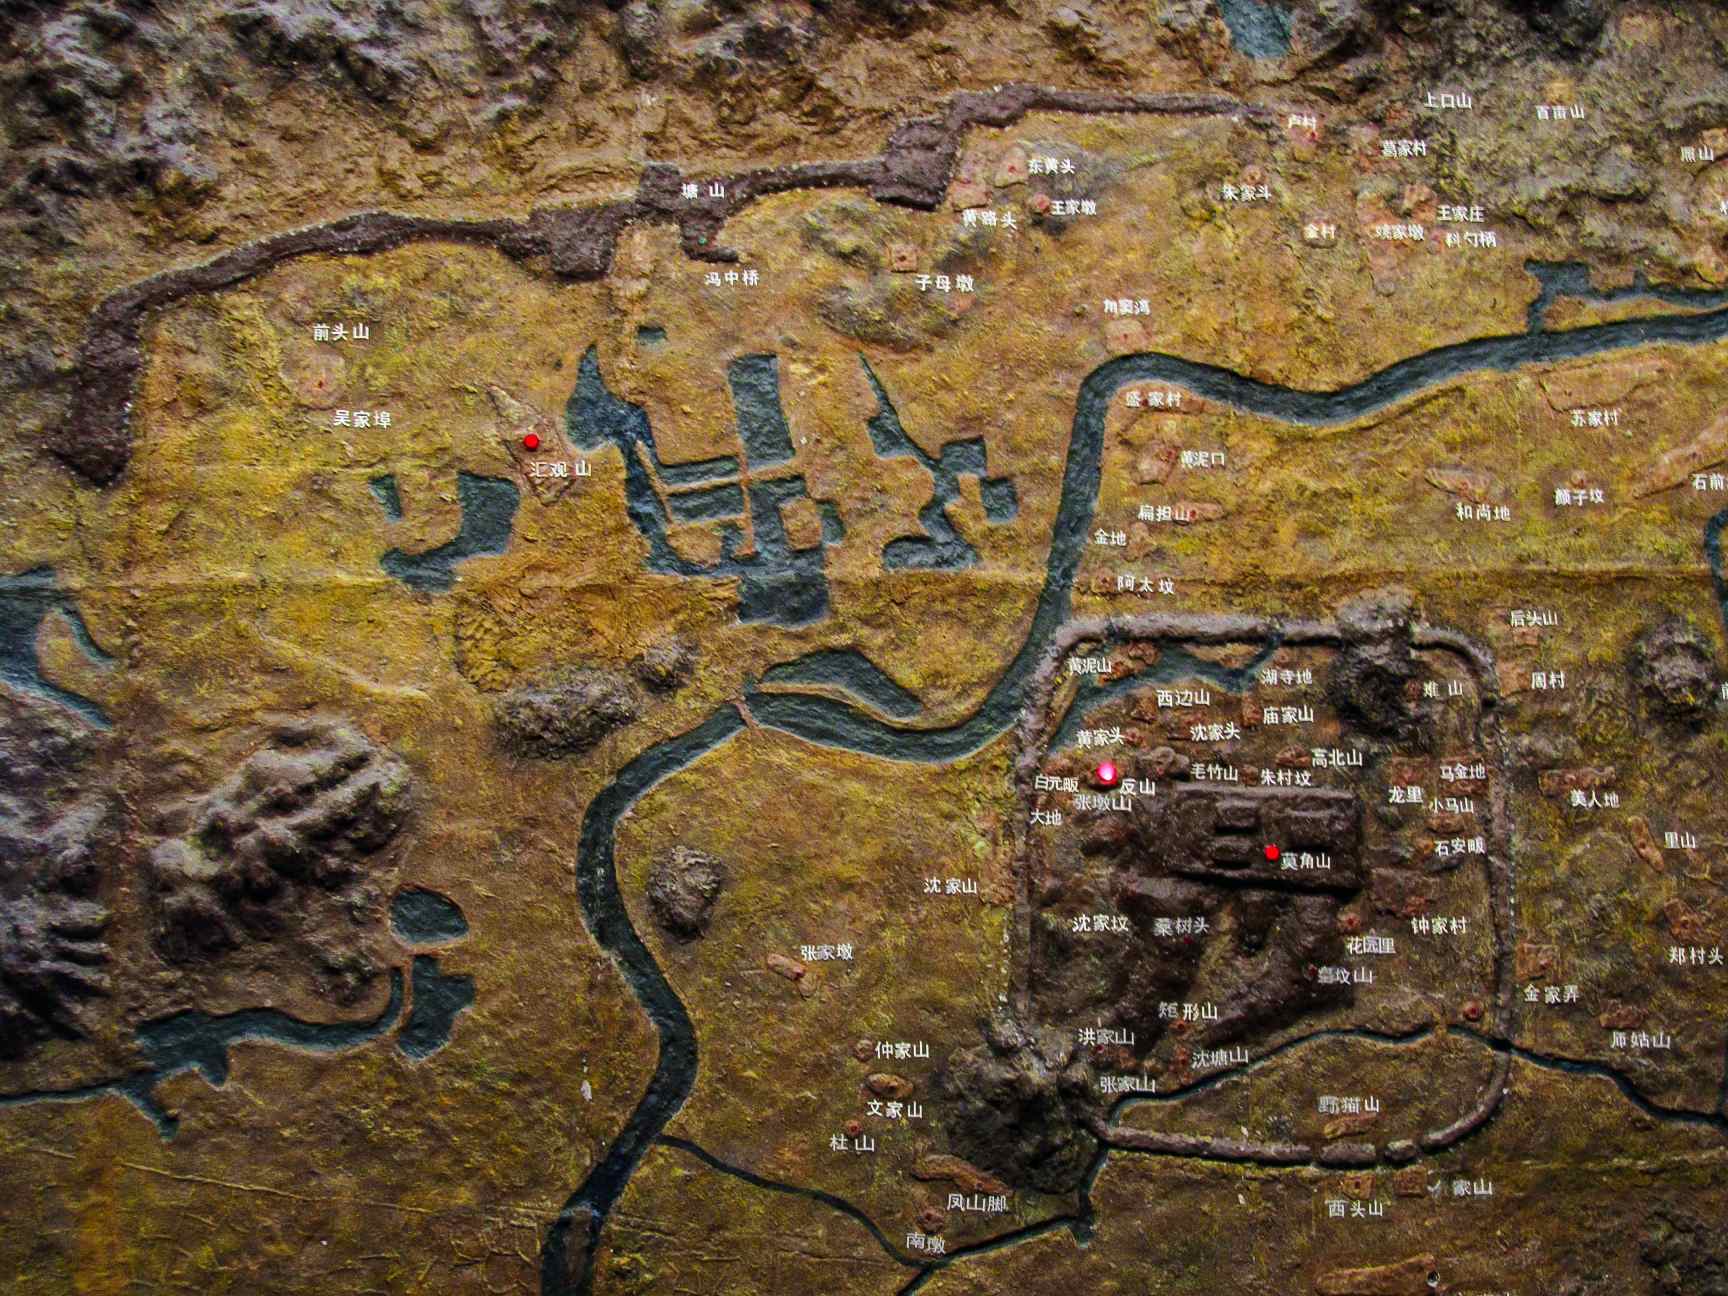 Model kota kuno Liangzhu, dipajang di Museum Liangzhu.